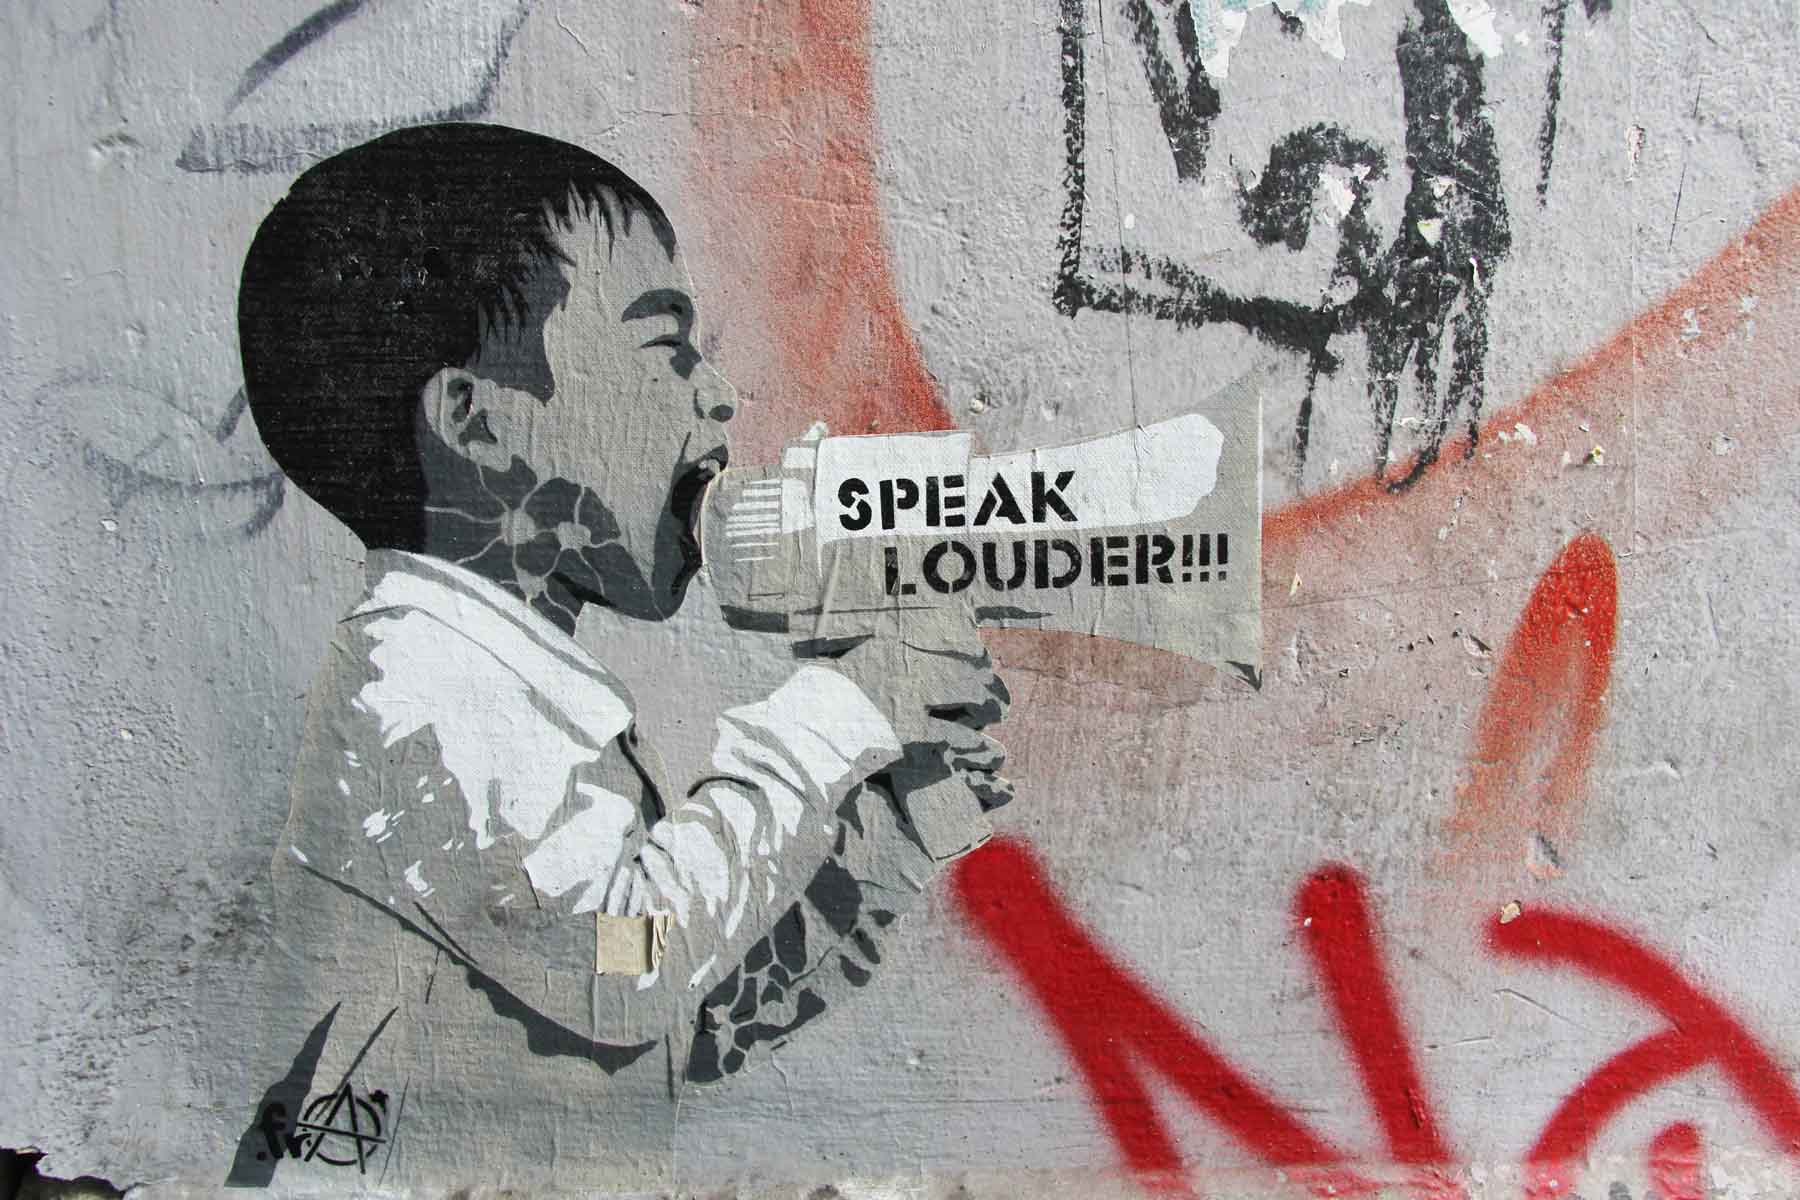 Speak louder street art by .fra in berlin